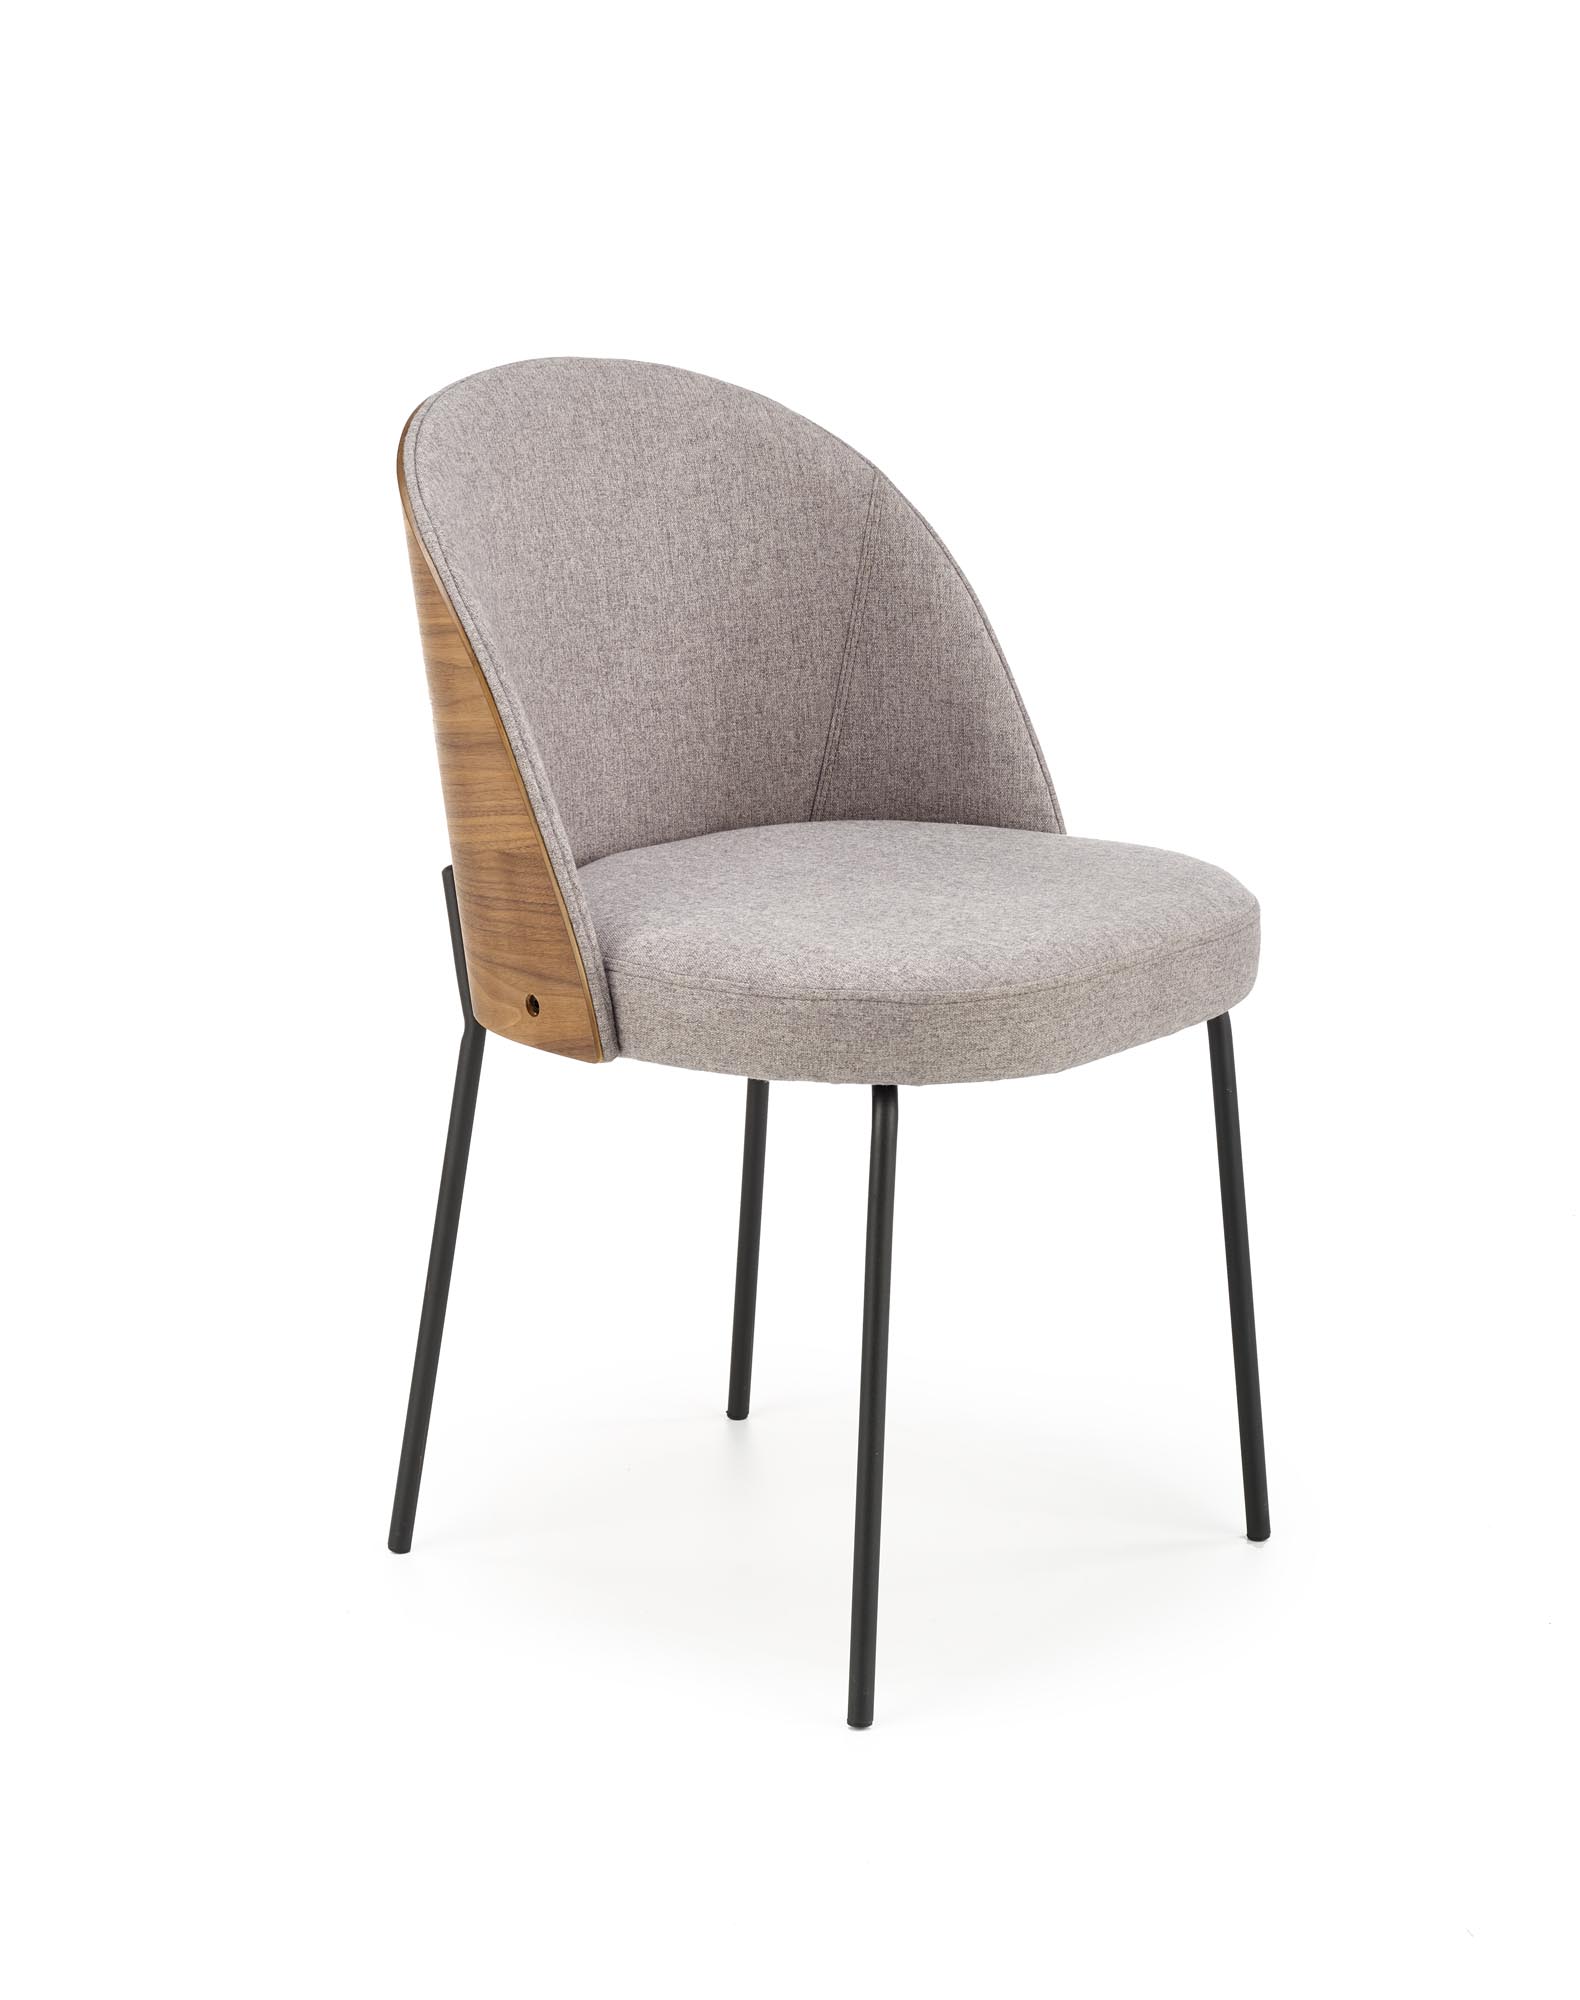 K451 stolica, boja: siva / svijetli orah